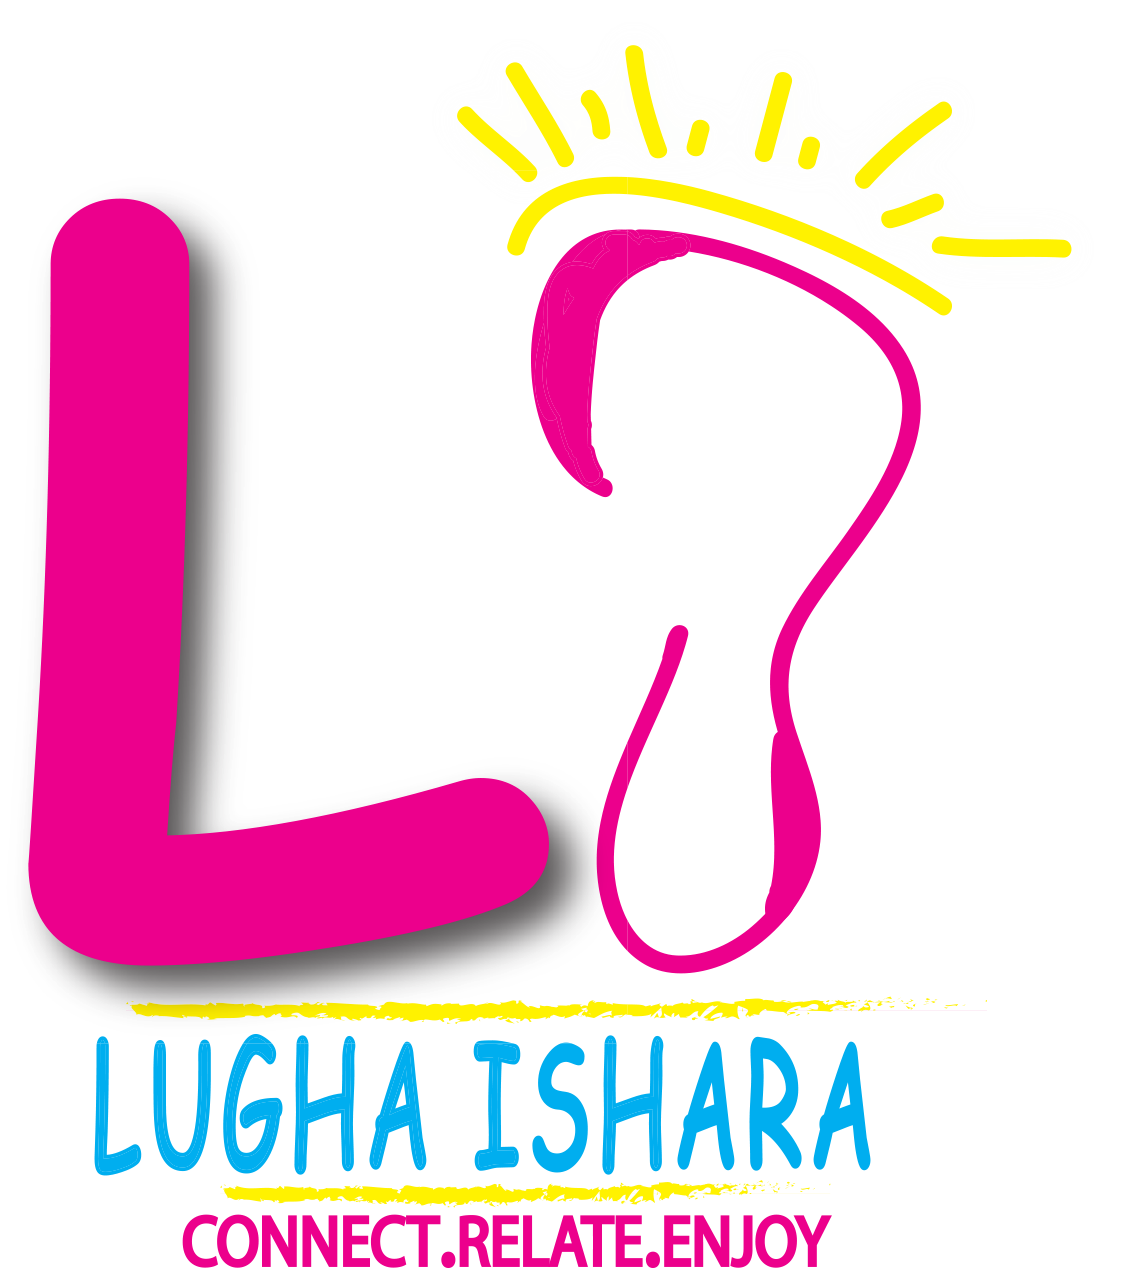 Lugha Ishara Logo